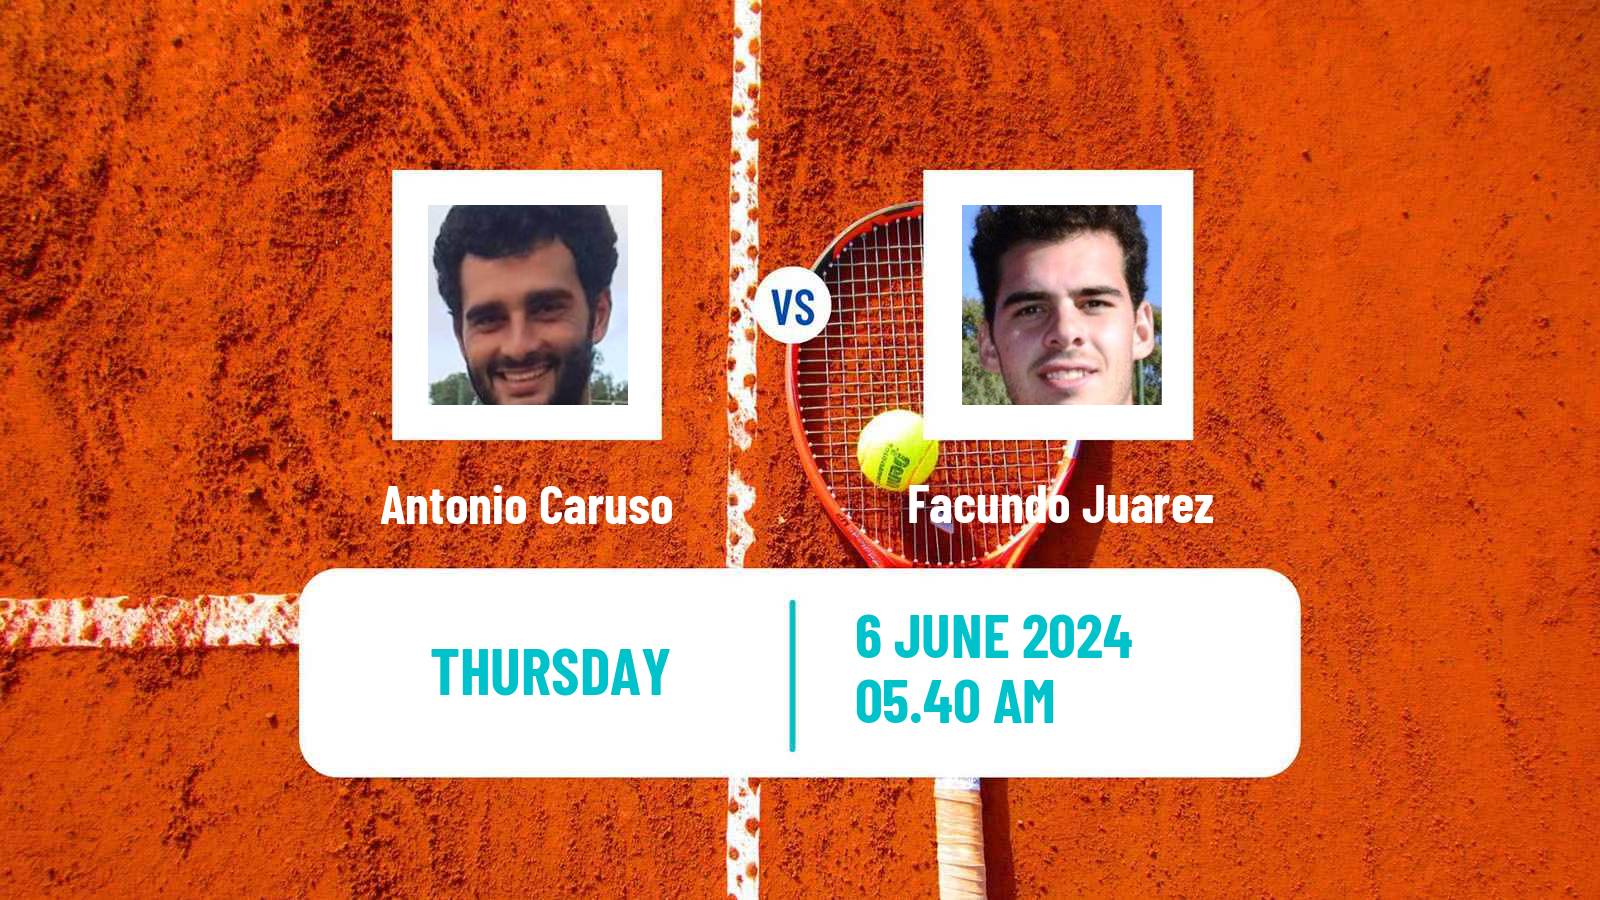 Tennis ITF M15 Caltanissetta Men Antonio Caruso - Facundo Juarez